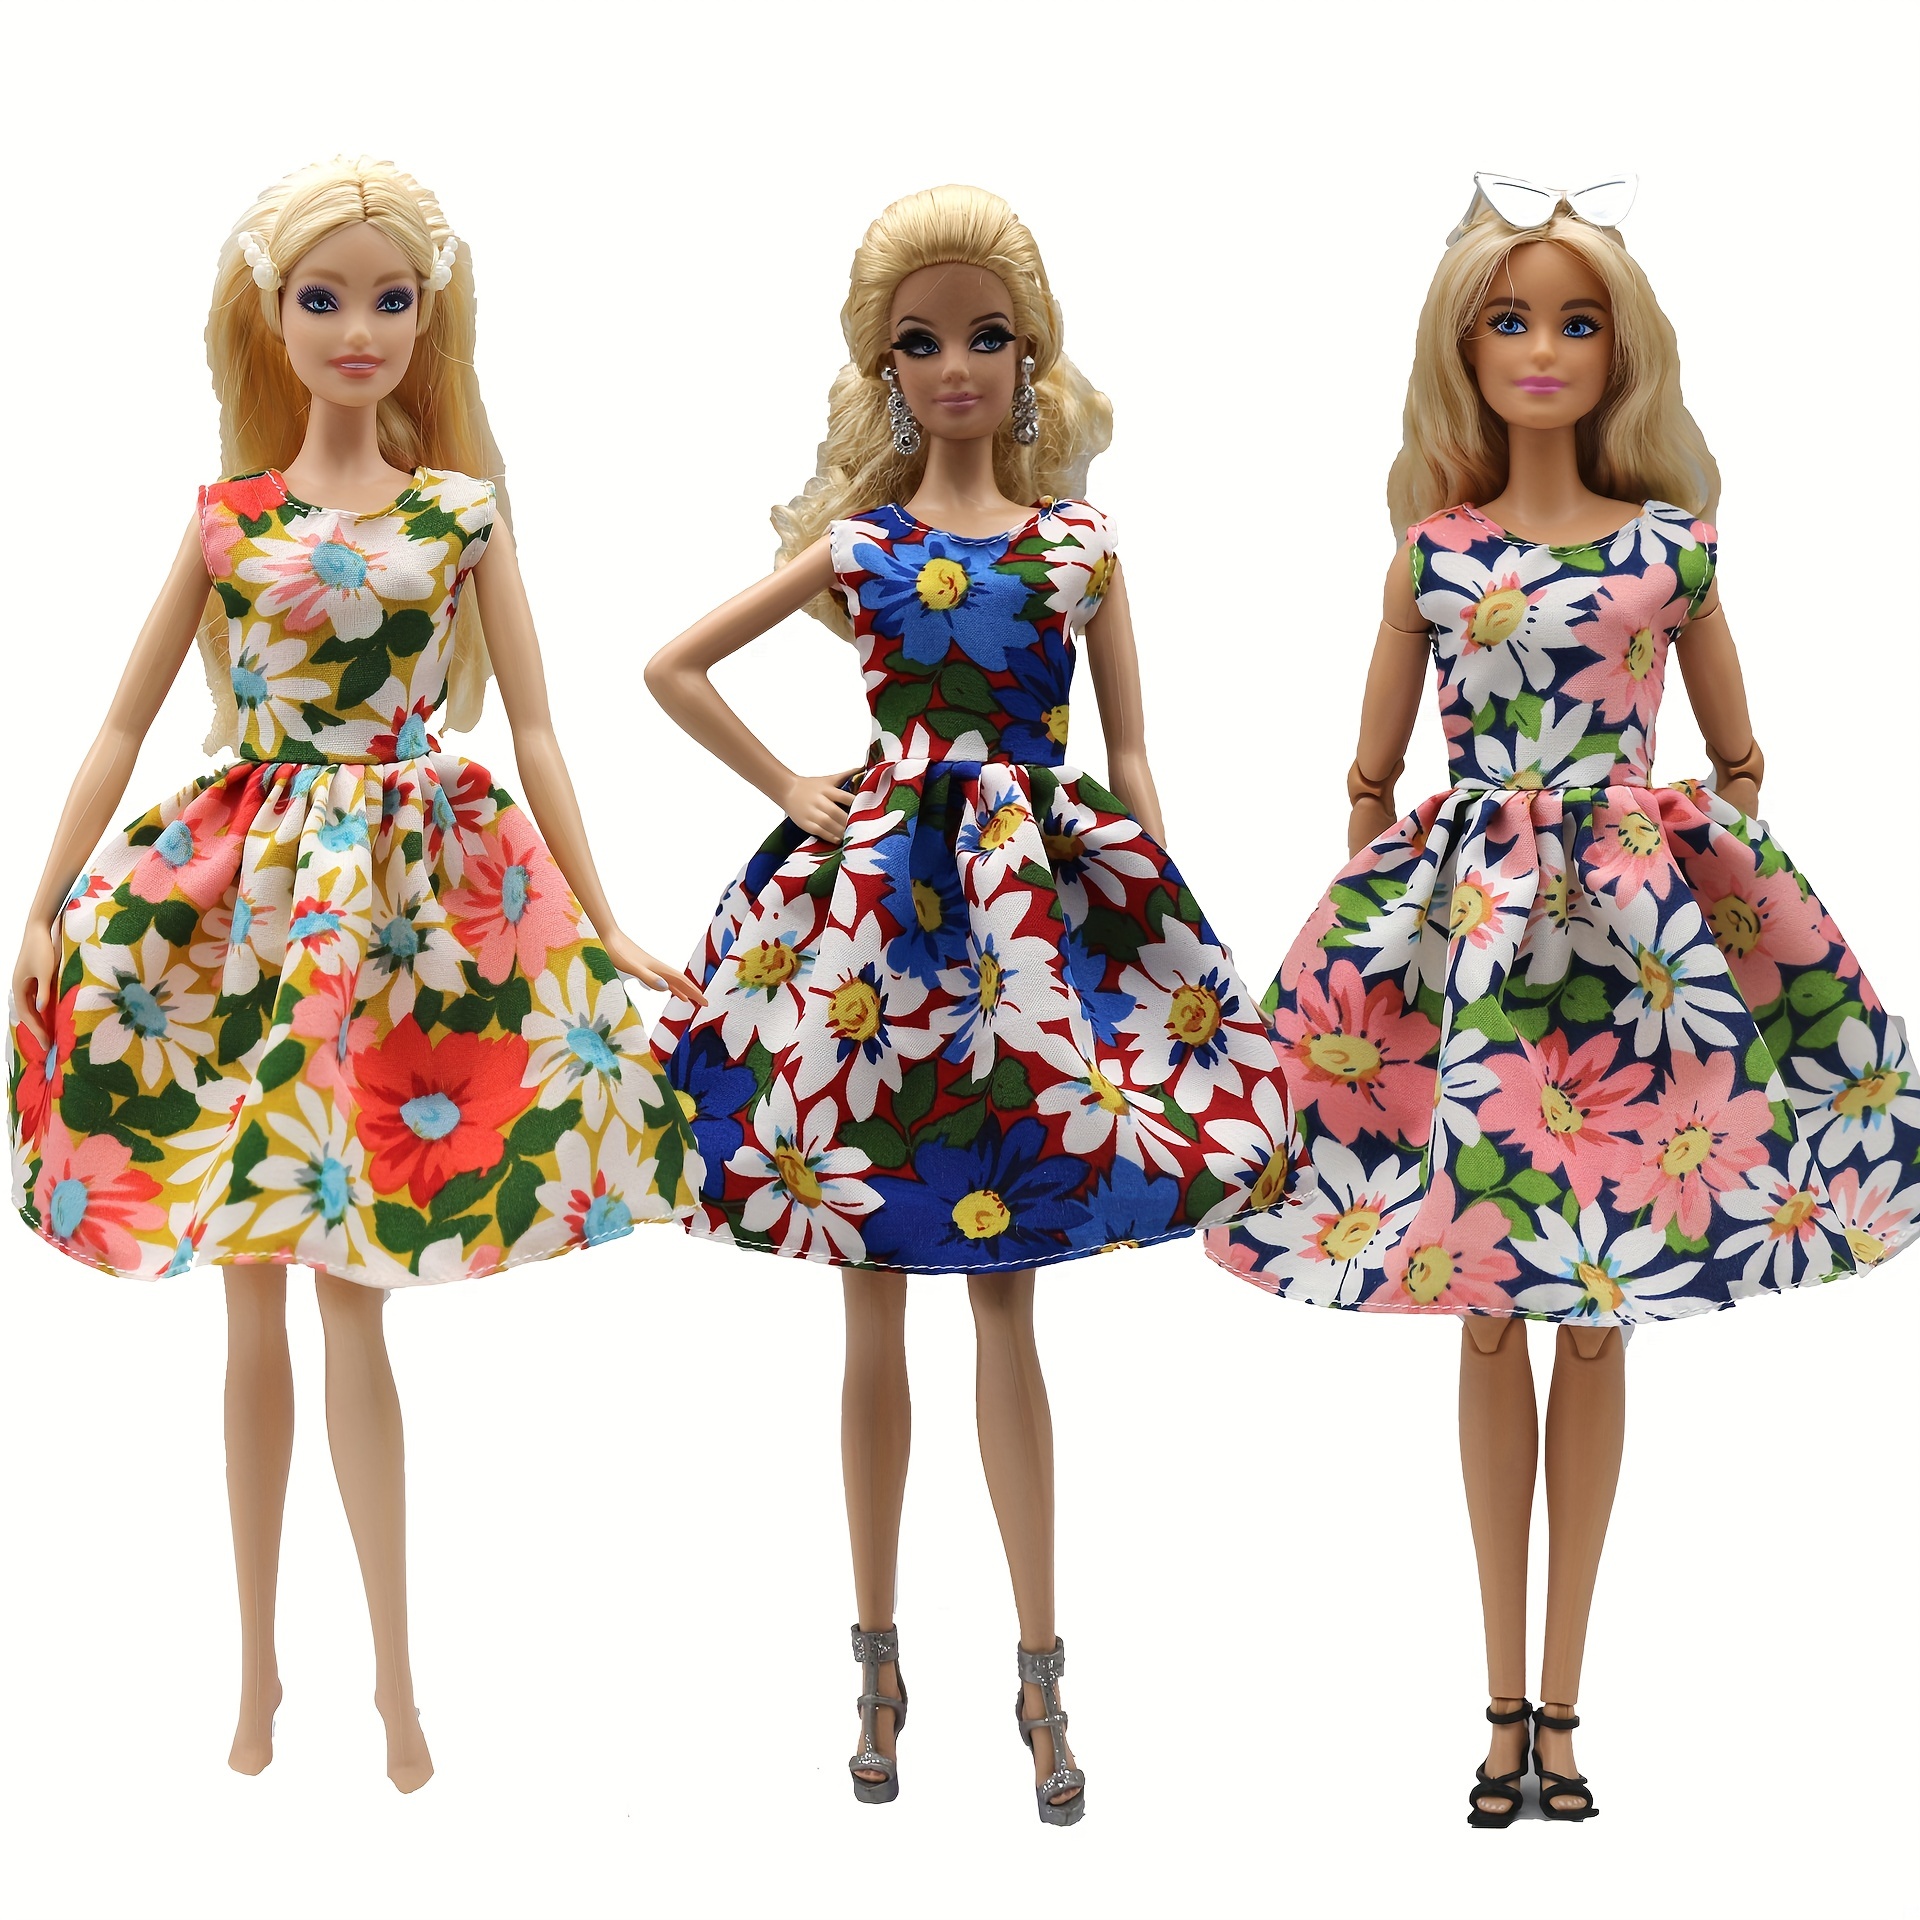 Taille Random 10 Dresses Mini robe colorée sans manches pour poupée Barbie,  10/20 ensembles aléatoires, accessoires d'été pour maison de poupée,  vêtements pour poupée Barbie, Lot de jouets adorables pour filles